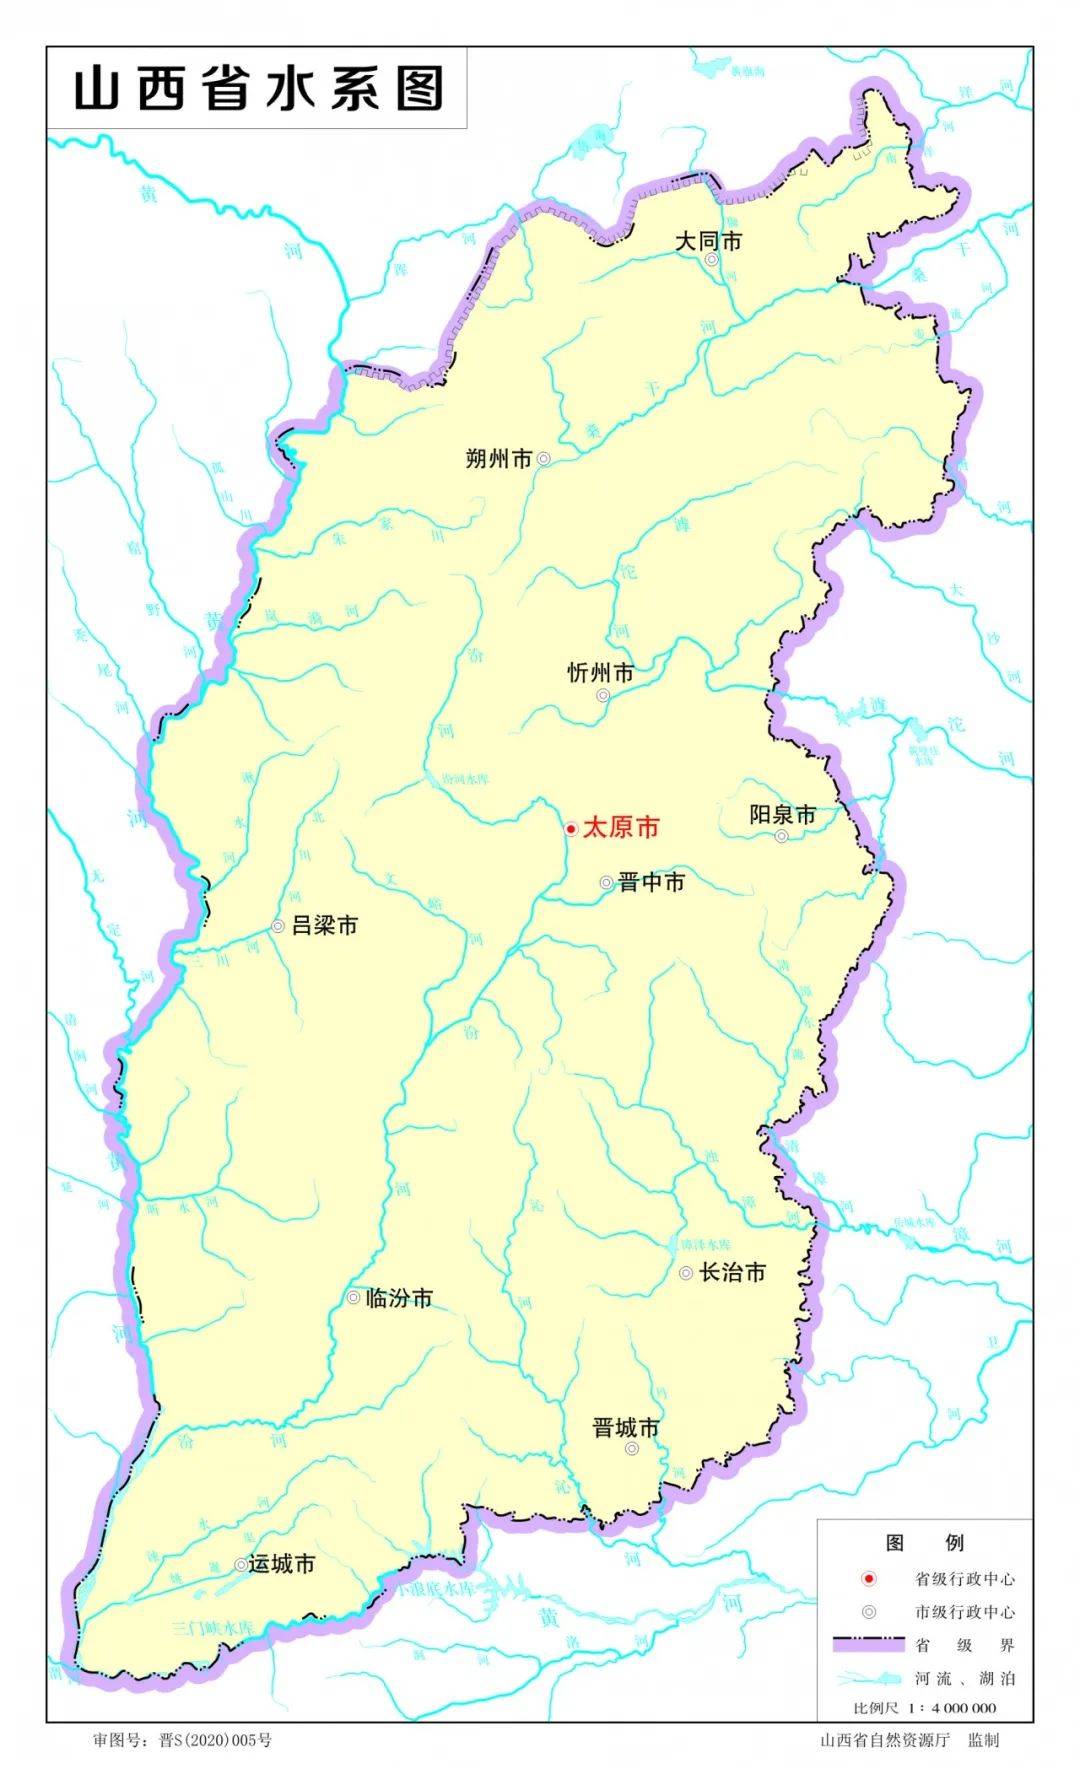 2020版山西省标准地图发布 增加了示意图和水系图